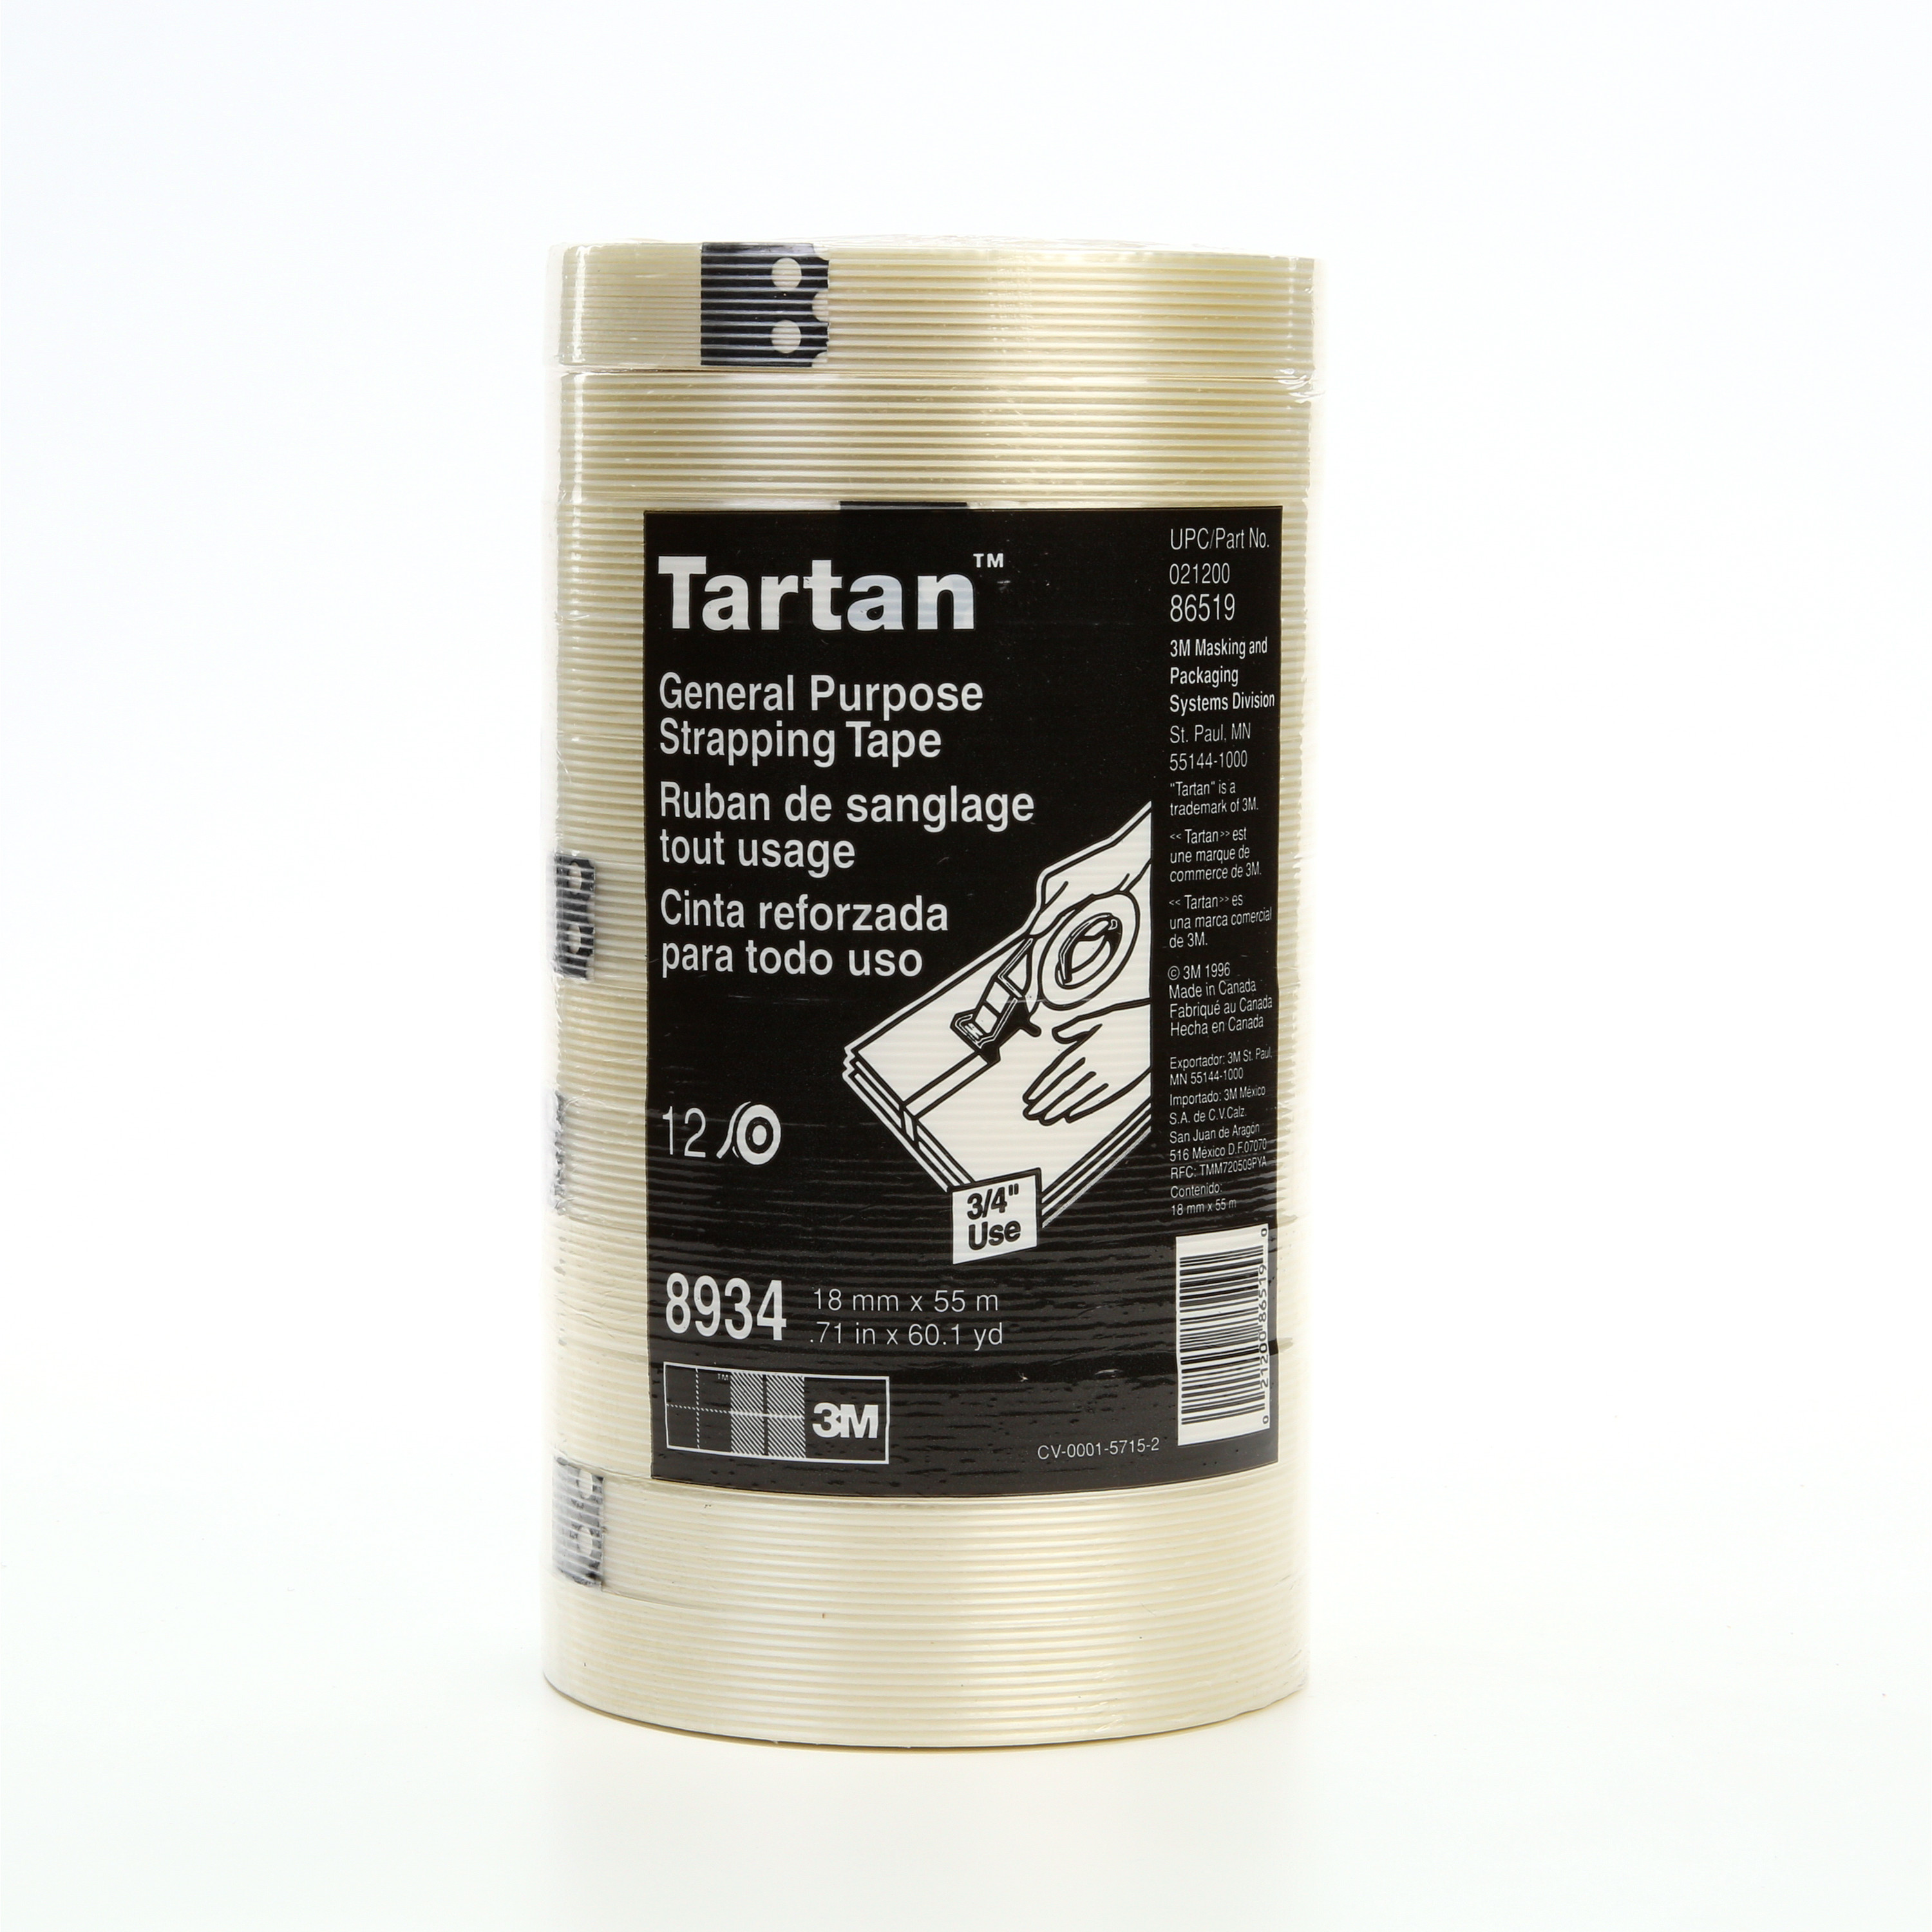 Tartan™ Filament Tape 8934, Clear, 18 mm x 55 m, 4 mil, 48 rolls per
case